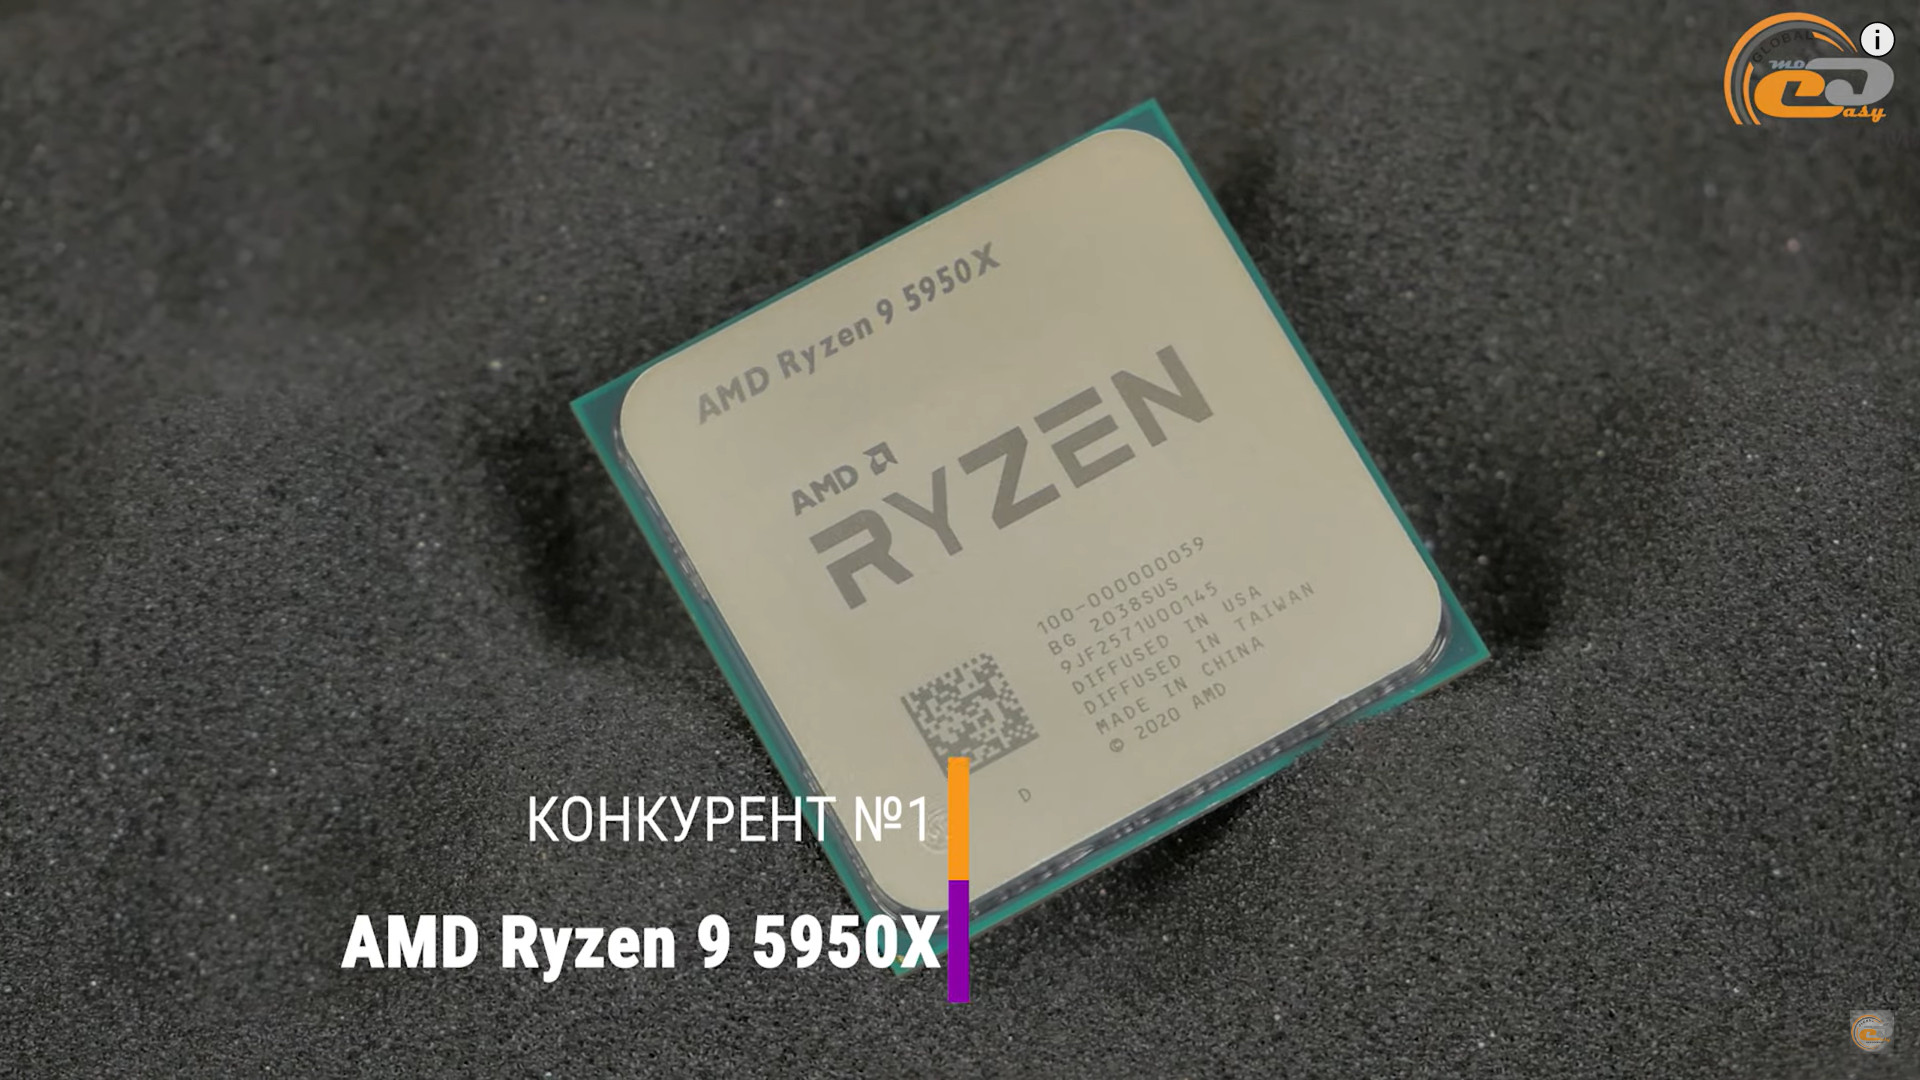 Ryzen 9 7950x oem. Процессор i9. Ryzen 7900x. Ryzen 9 7950x. Ryzen 9 7900x.